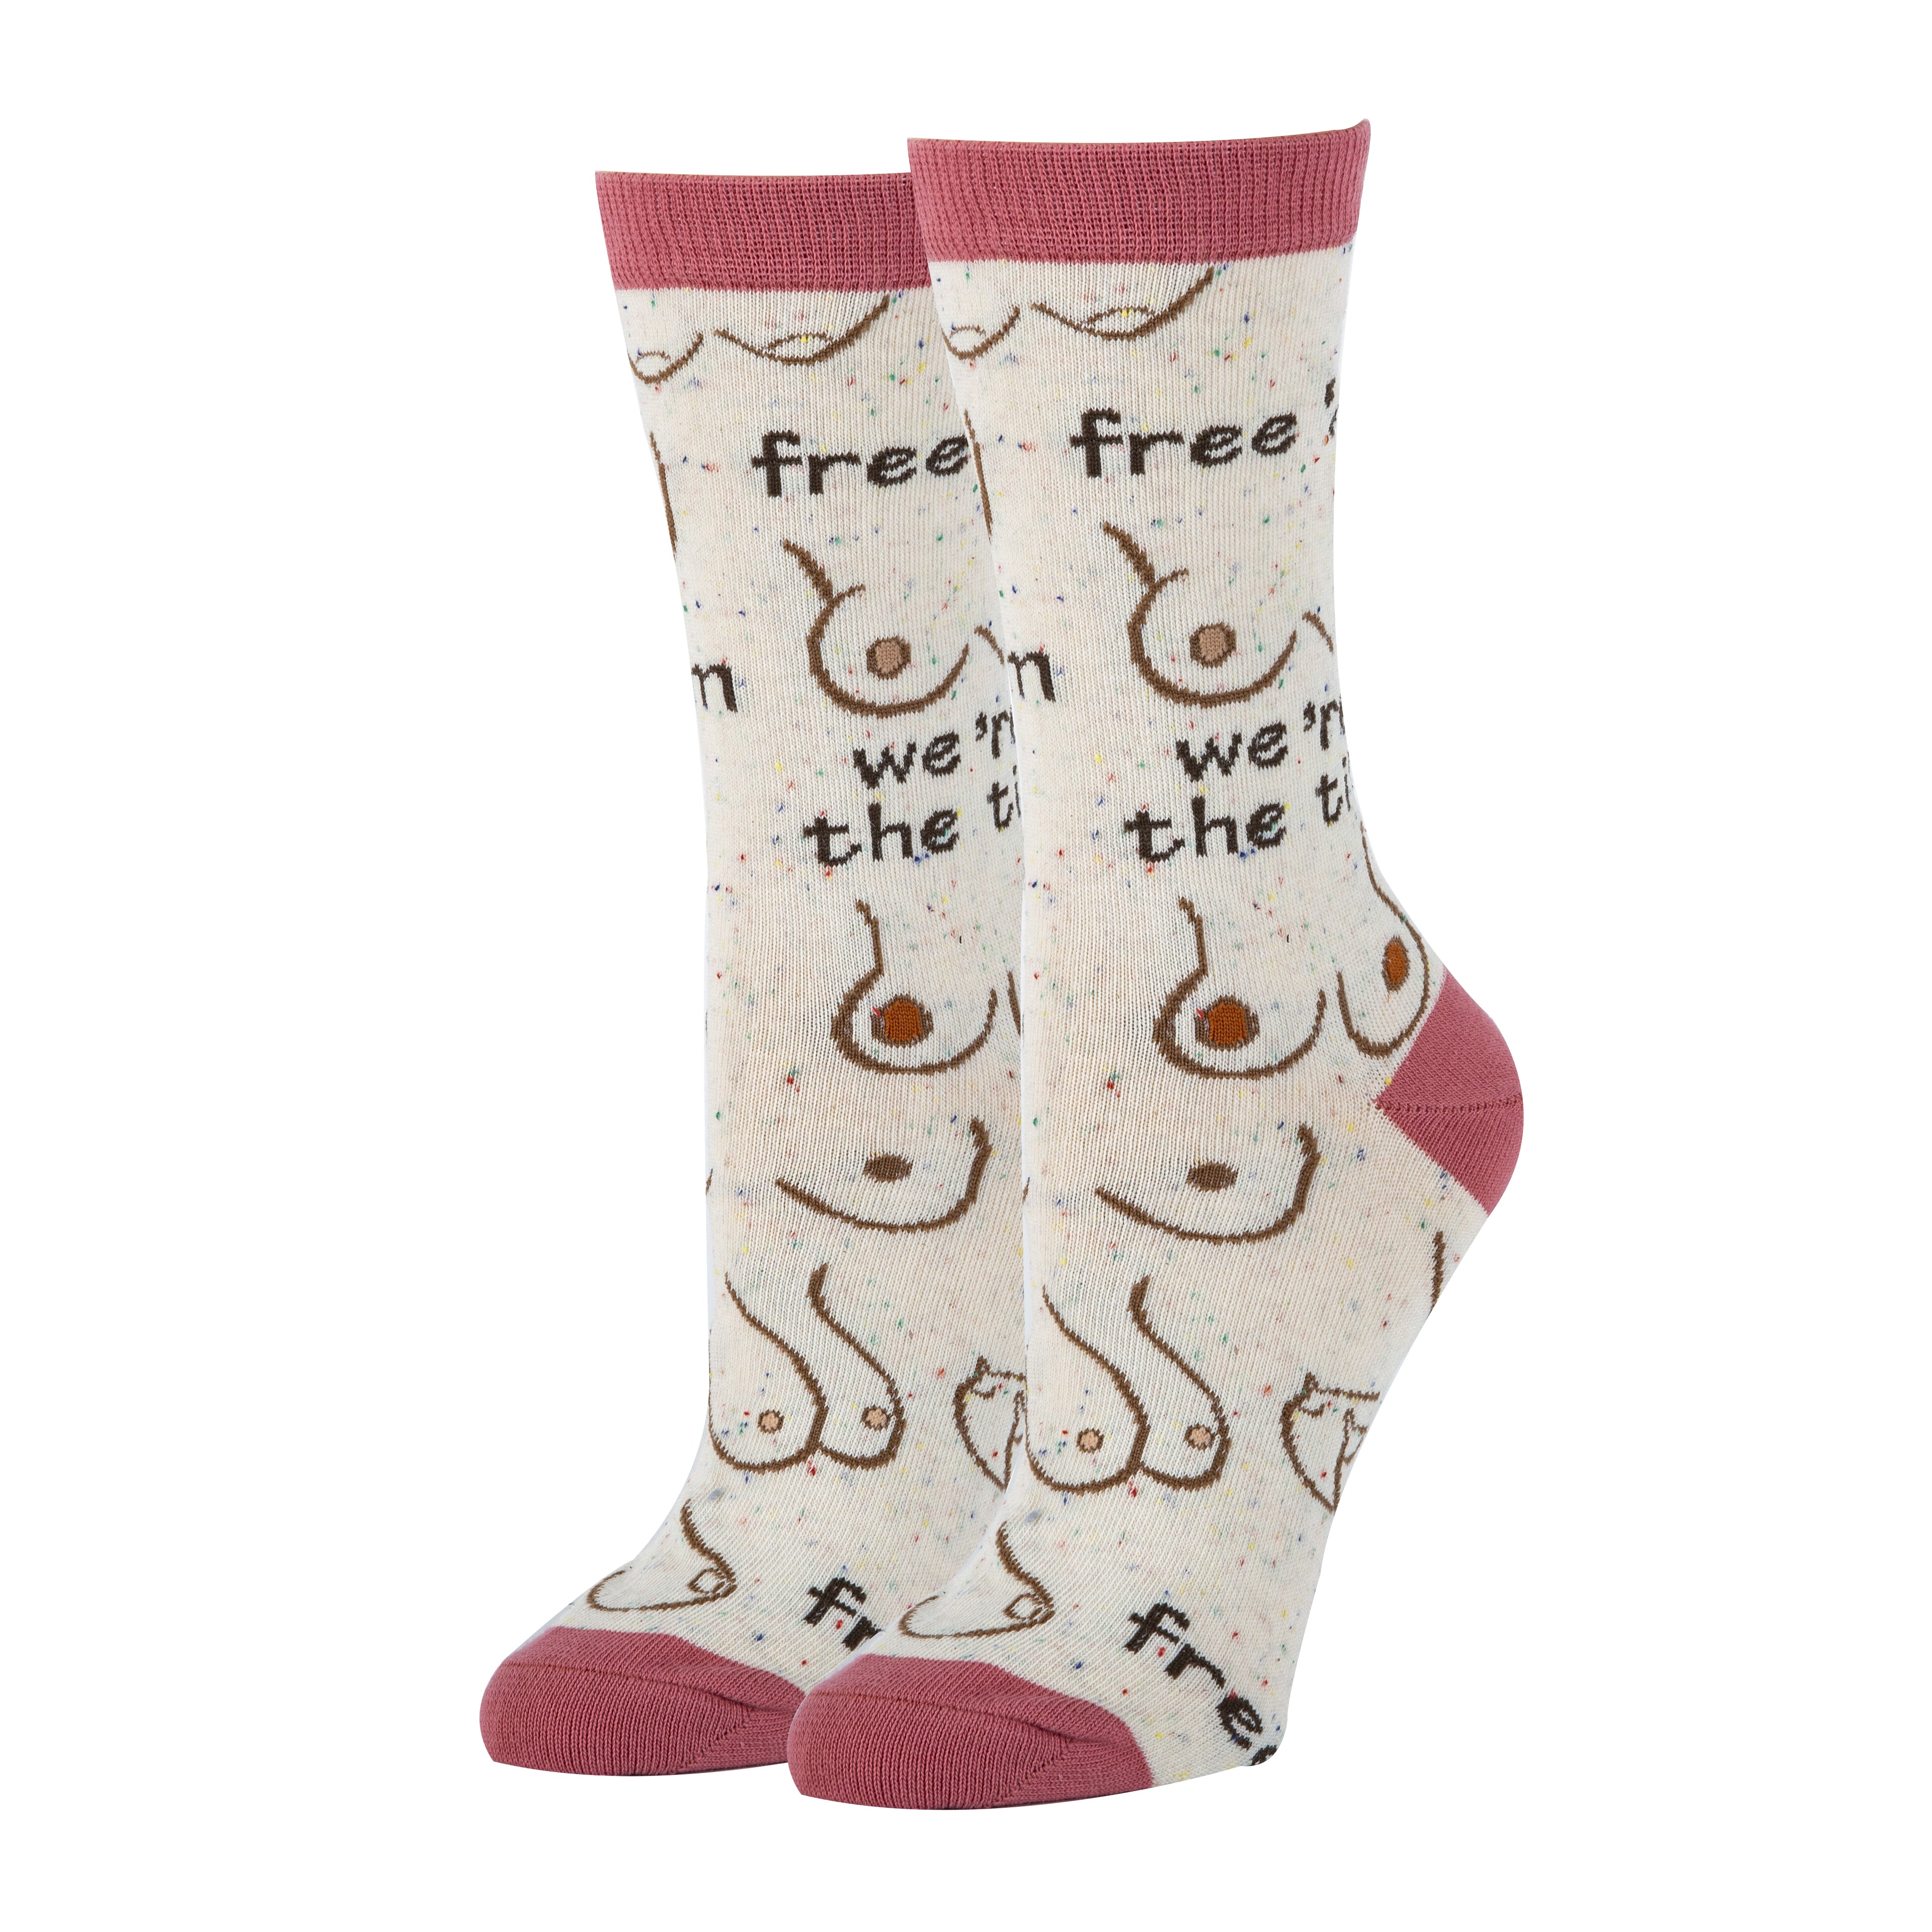 Free ‘em Socks | Novelty Crew Socks For Women